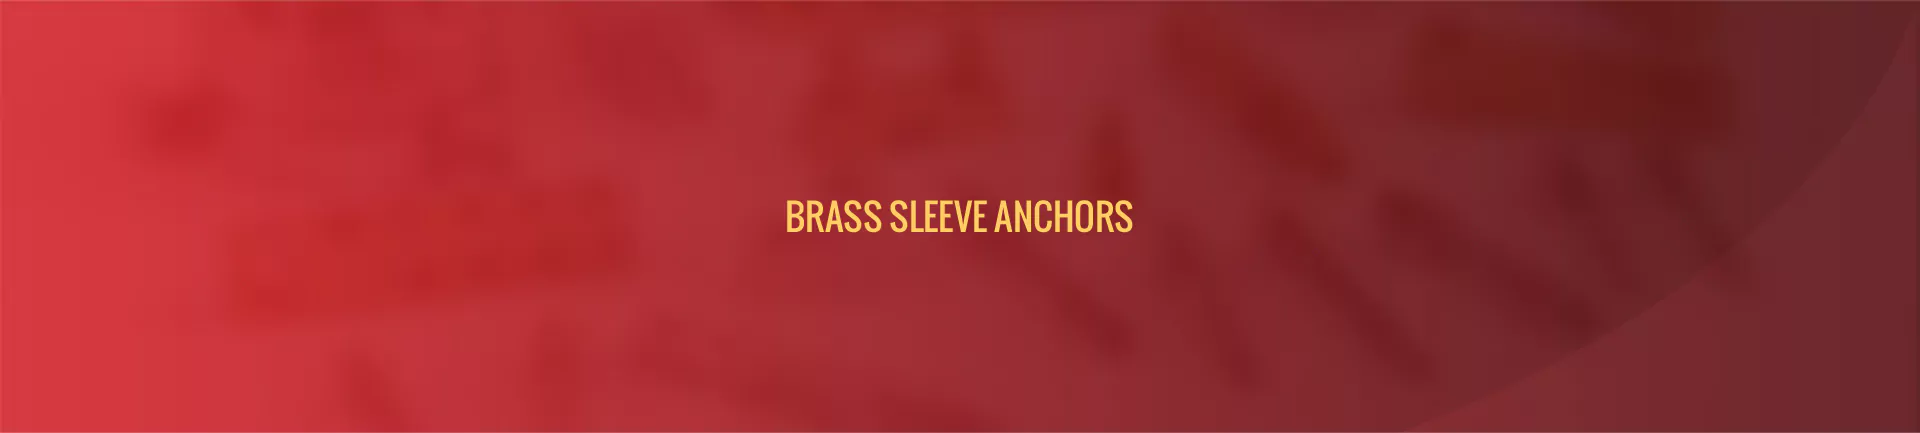 brass-sleeve-anchors-banner